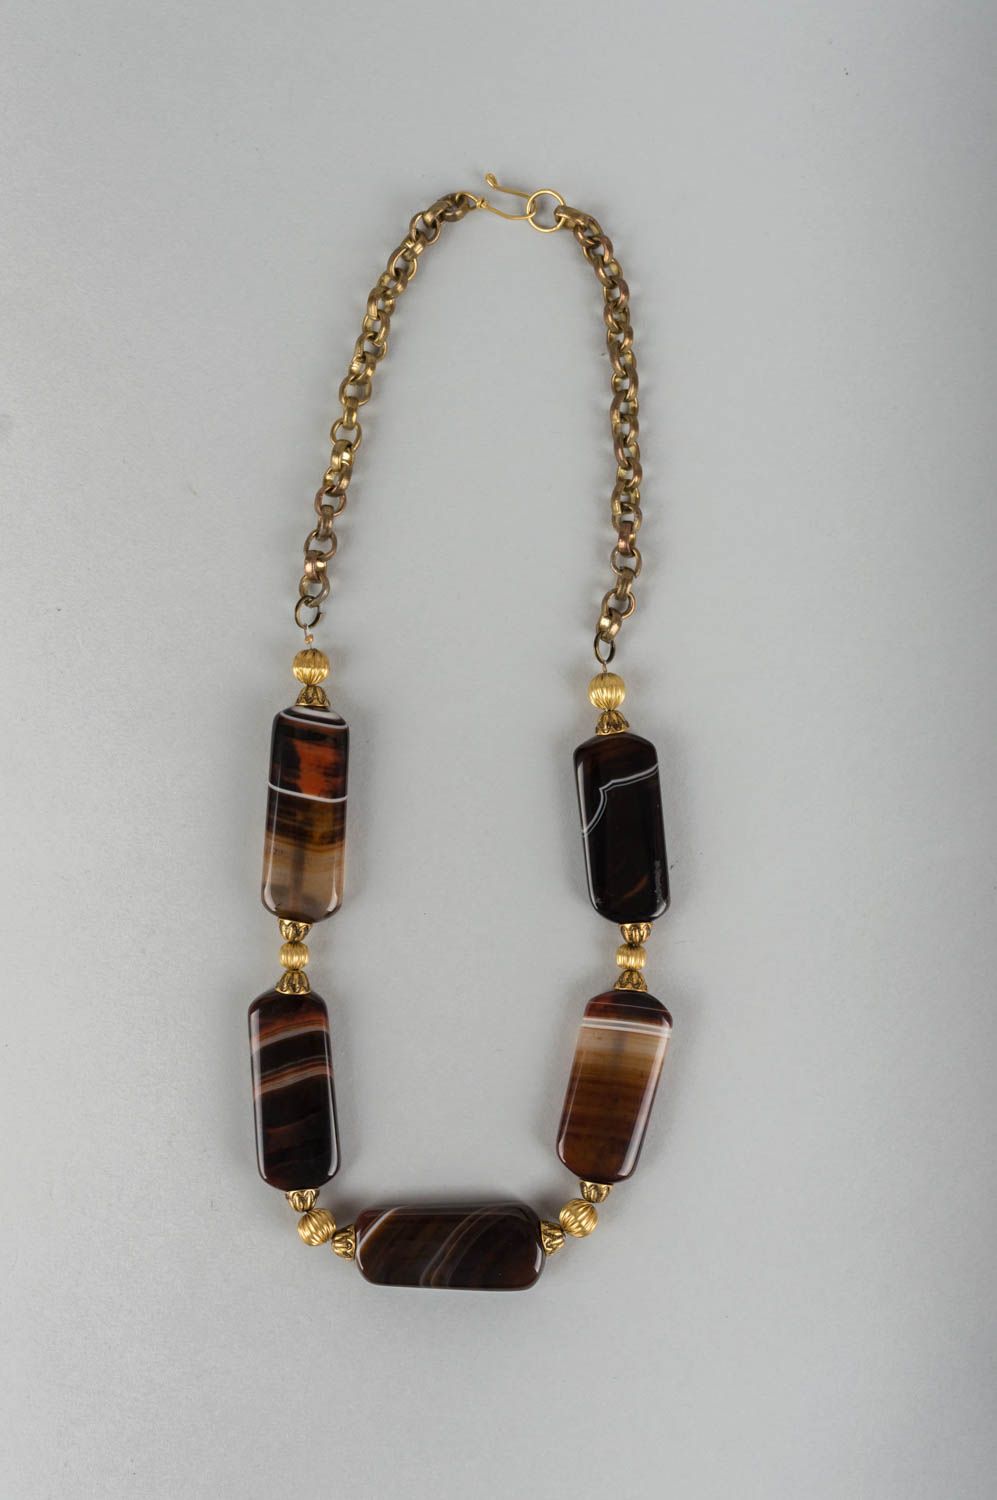 Handmade Halskette mit Steinen schönes Damen Accessoire handgeschaffen stilvoll foto 2